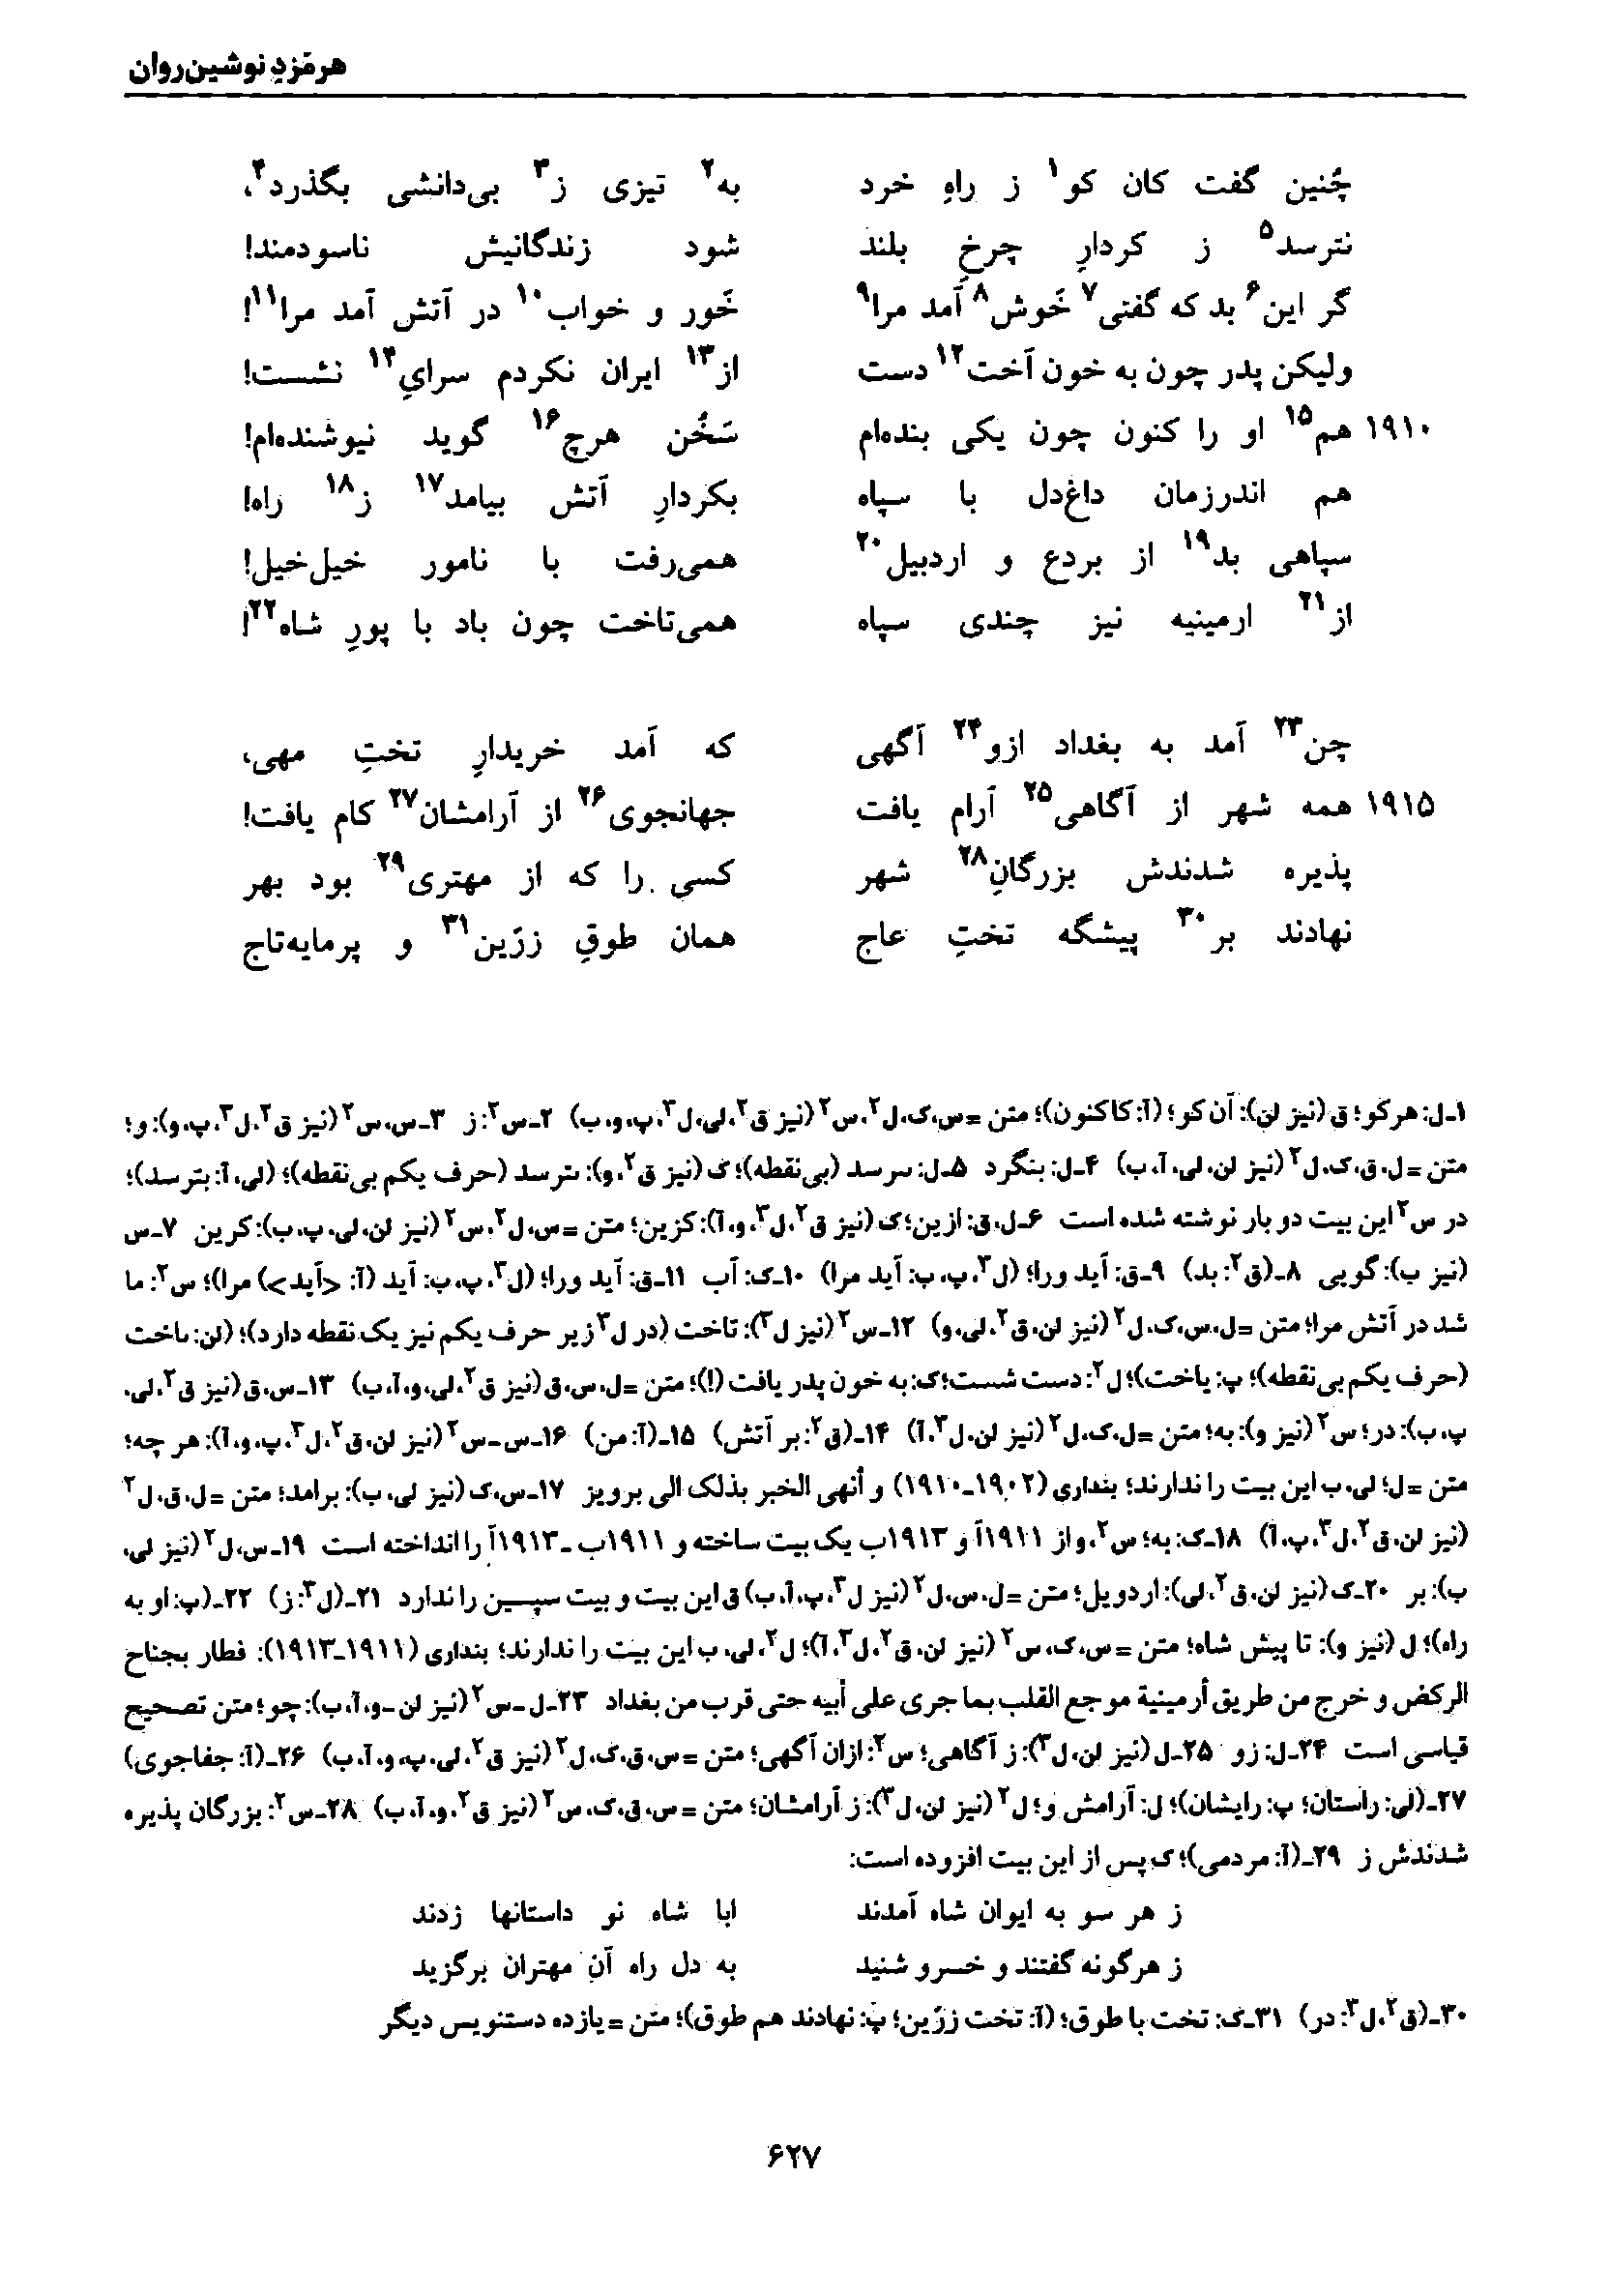 vol. 7, p. 627